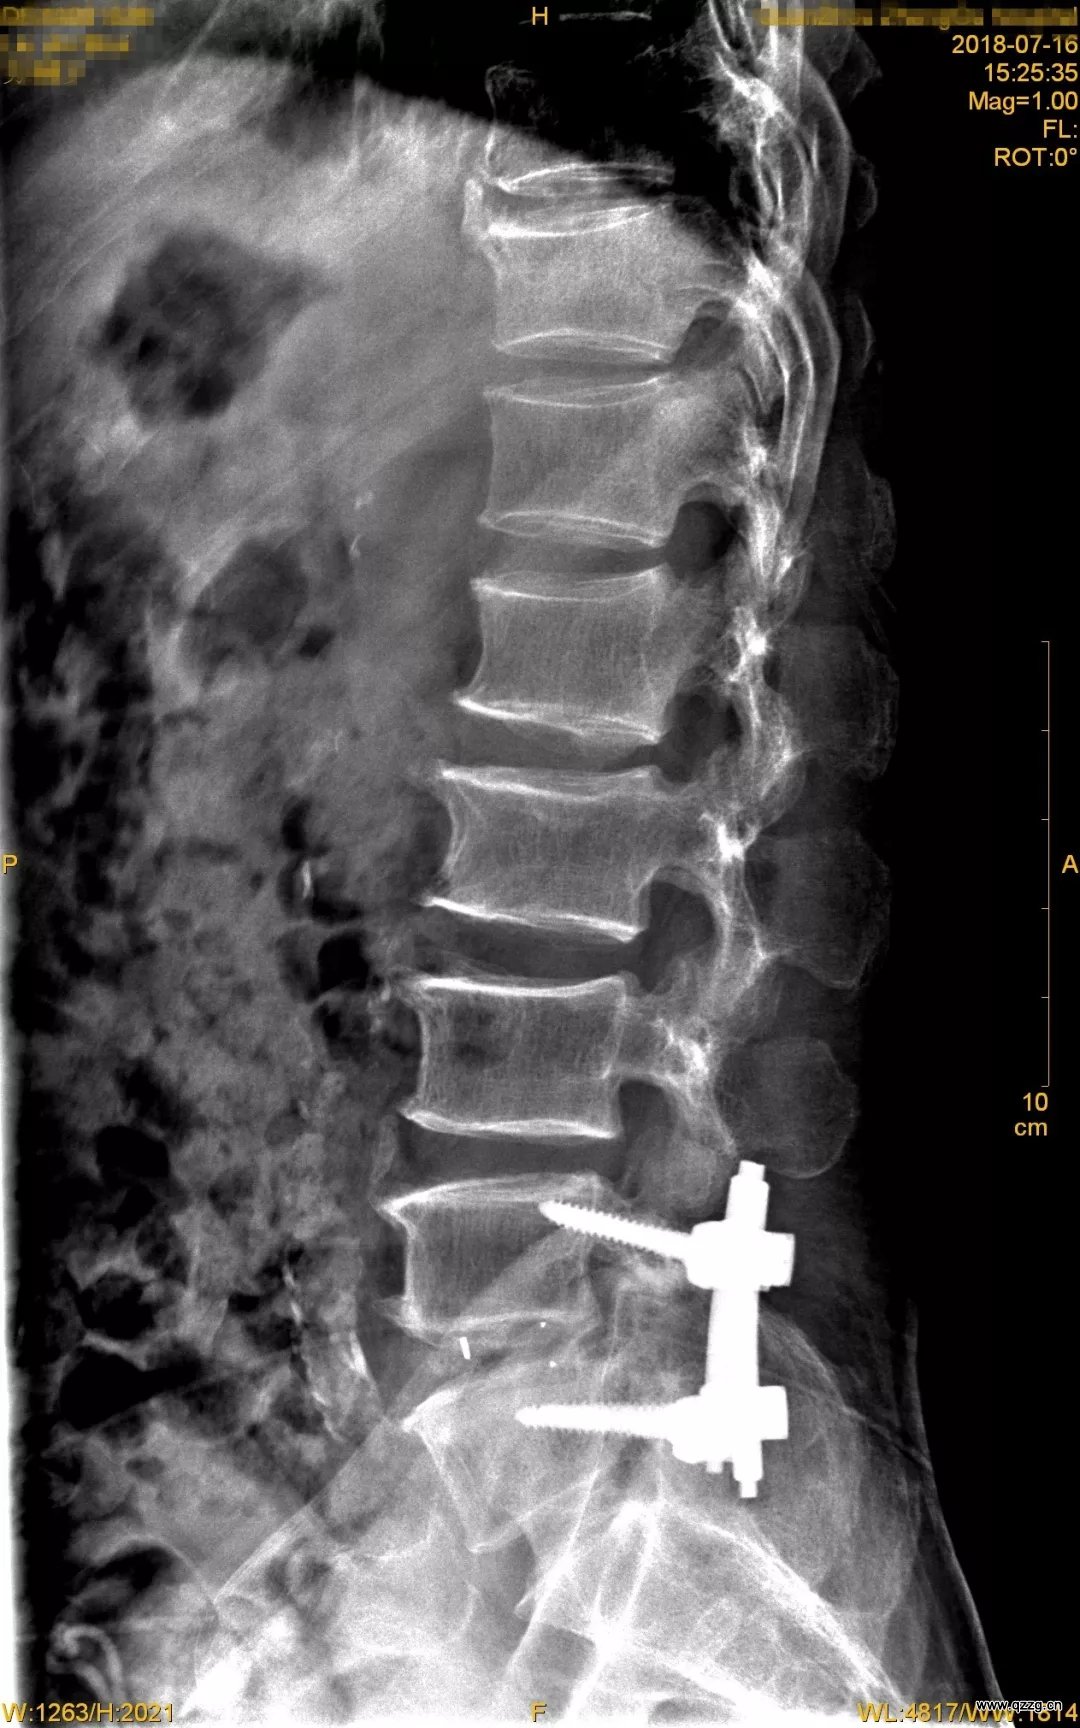 腰椎后路椎管减压植骨融合内固定手术纪实(2020.08.10) - 知乎